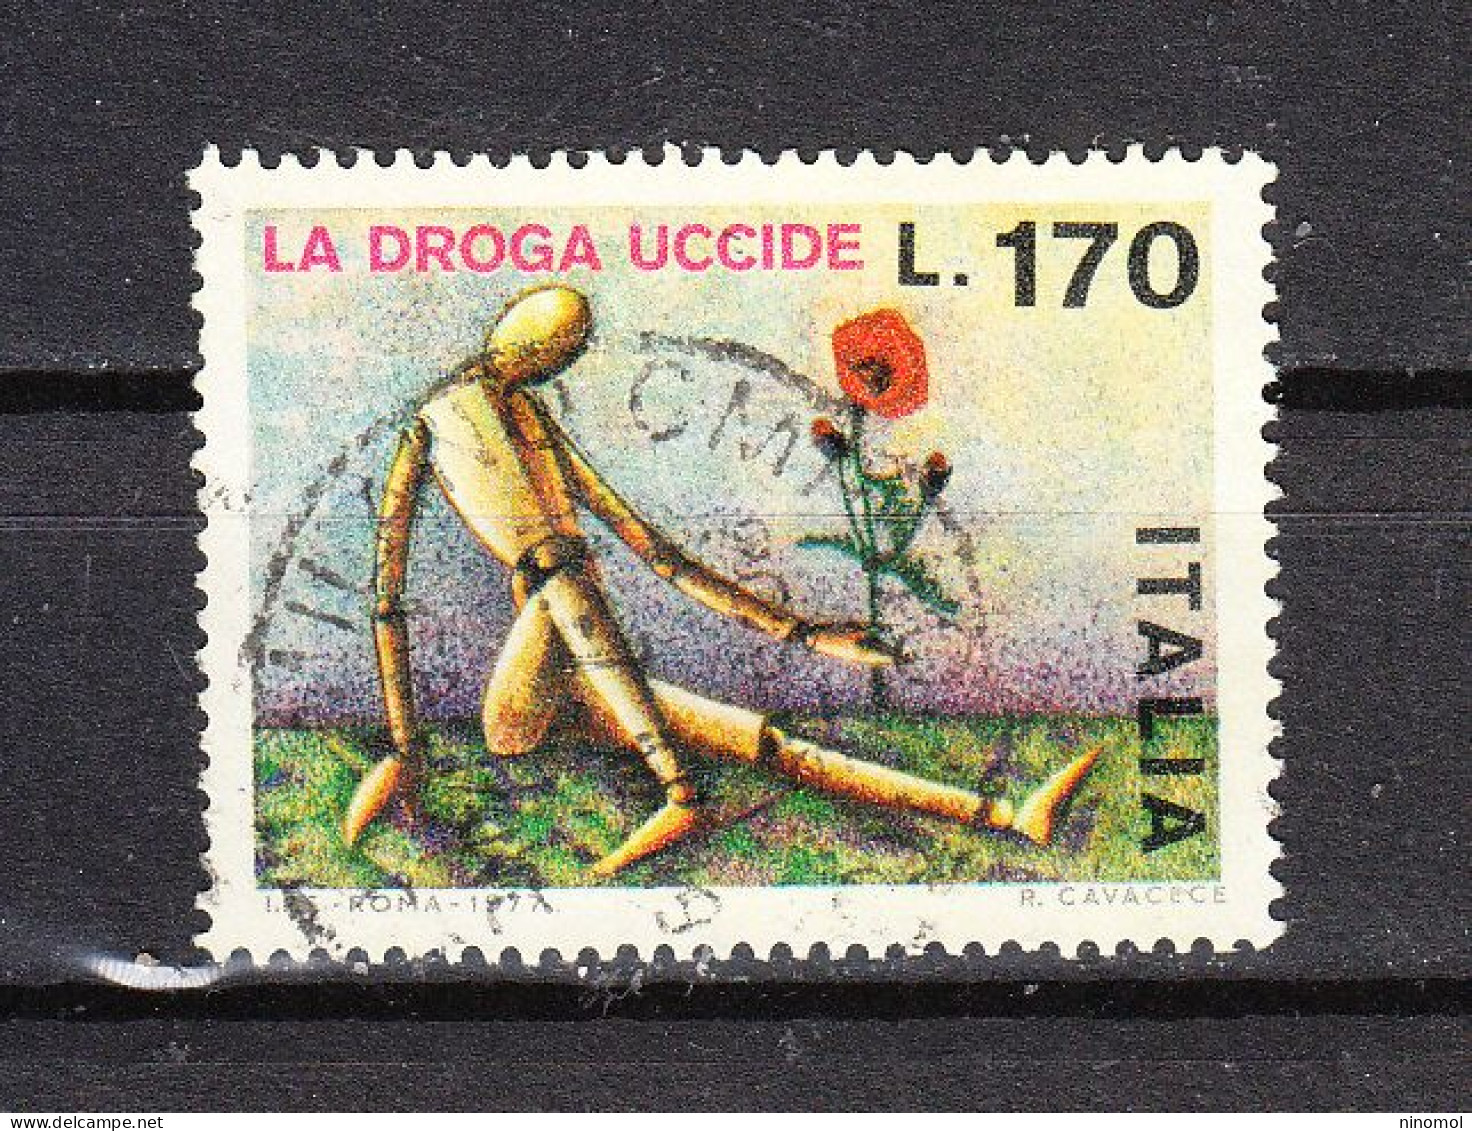 Italia   -  1977. La Droga Uccide. The Drug Kills.  Serie Completa 2 Valori, Complete Series - Drogue